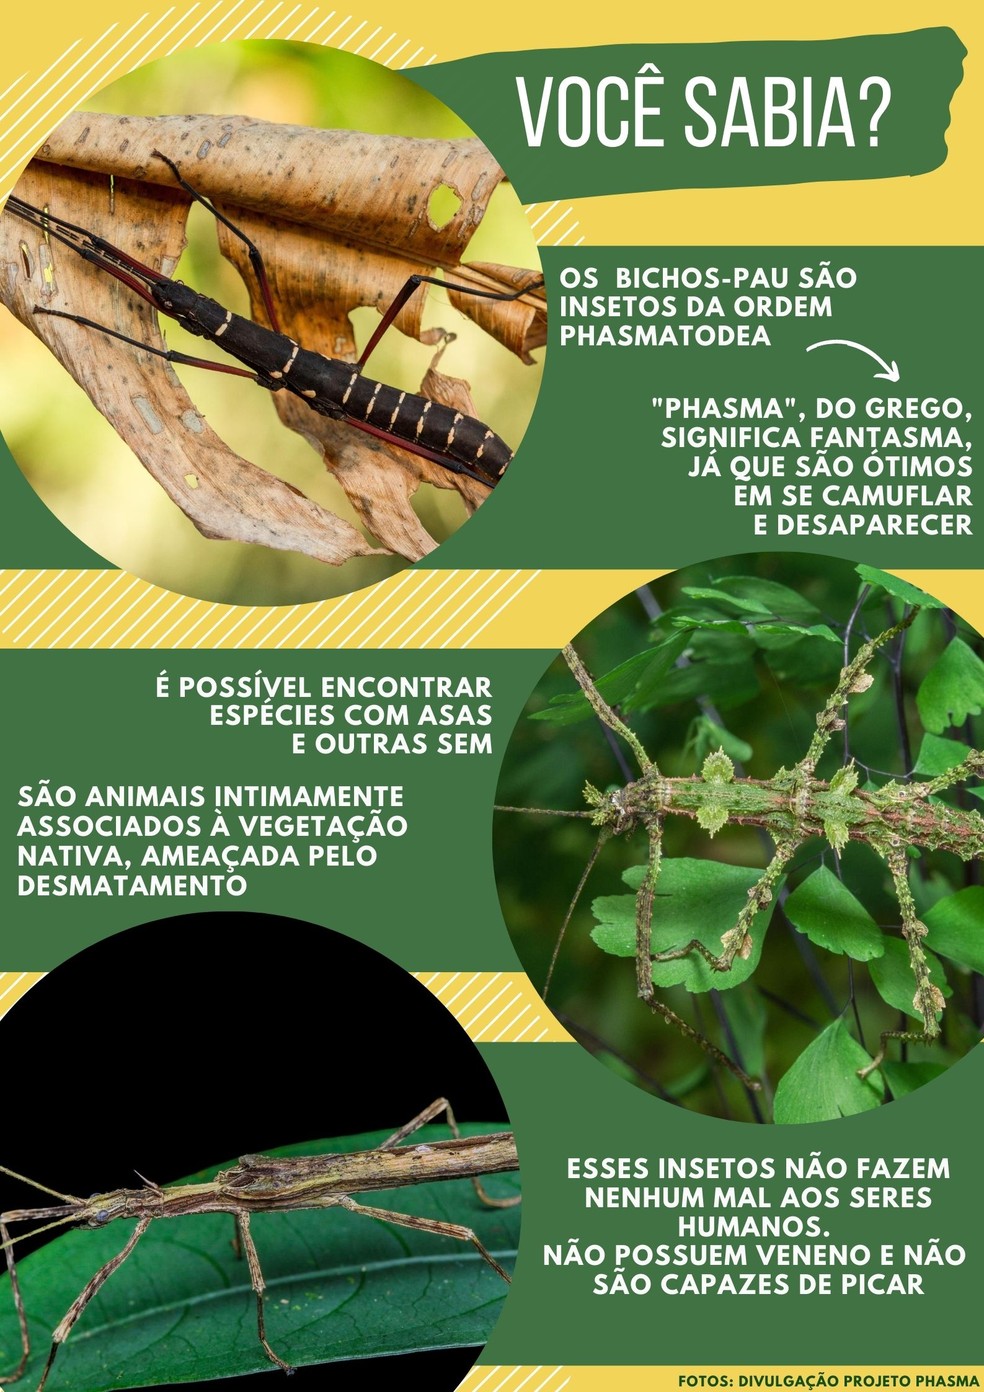 Bicho-pau: características, camuflagem, reprodução - Biologia Net